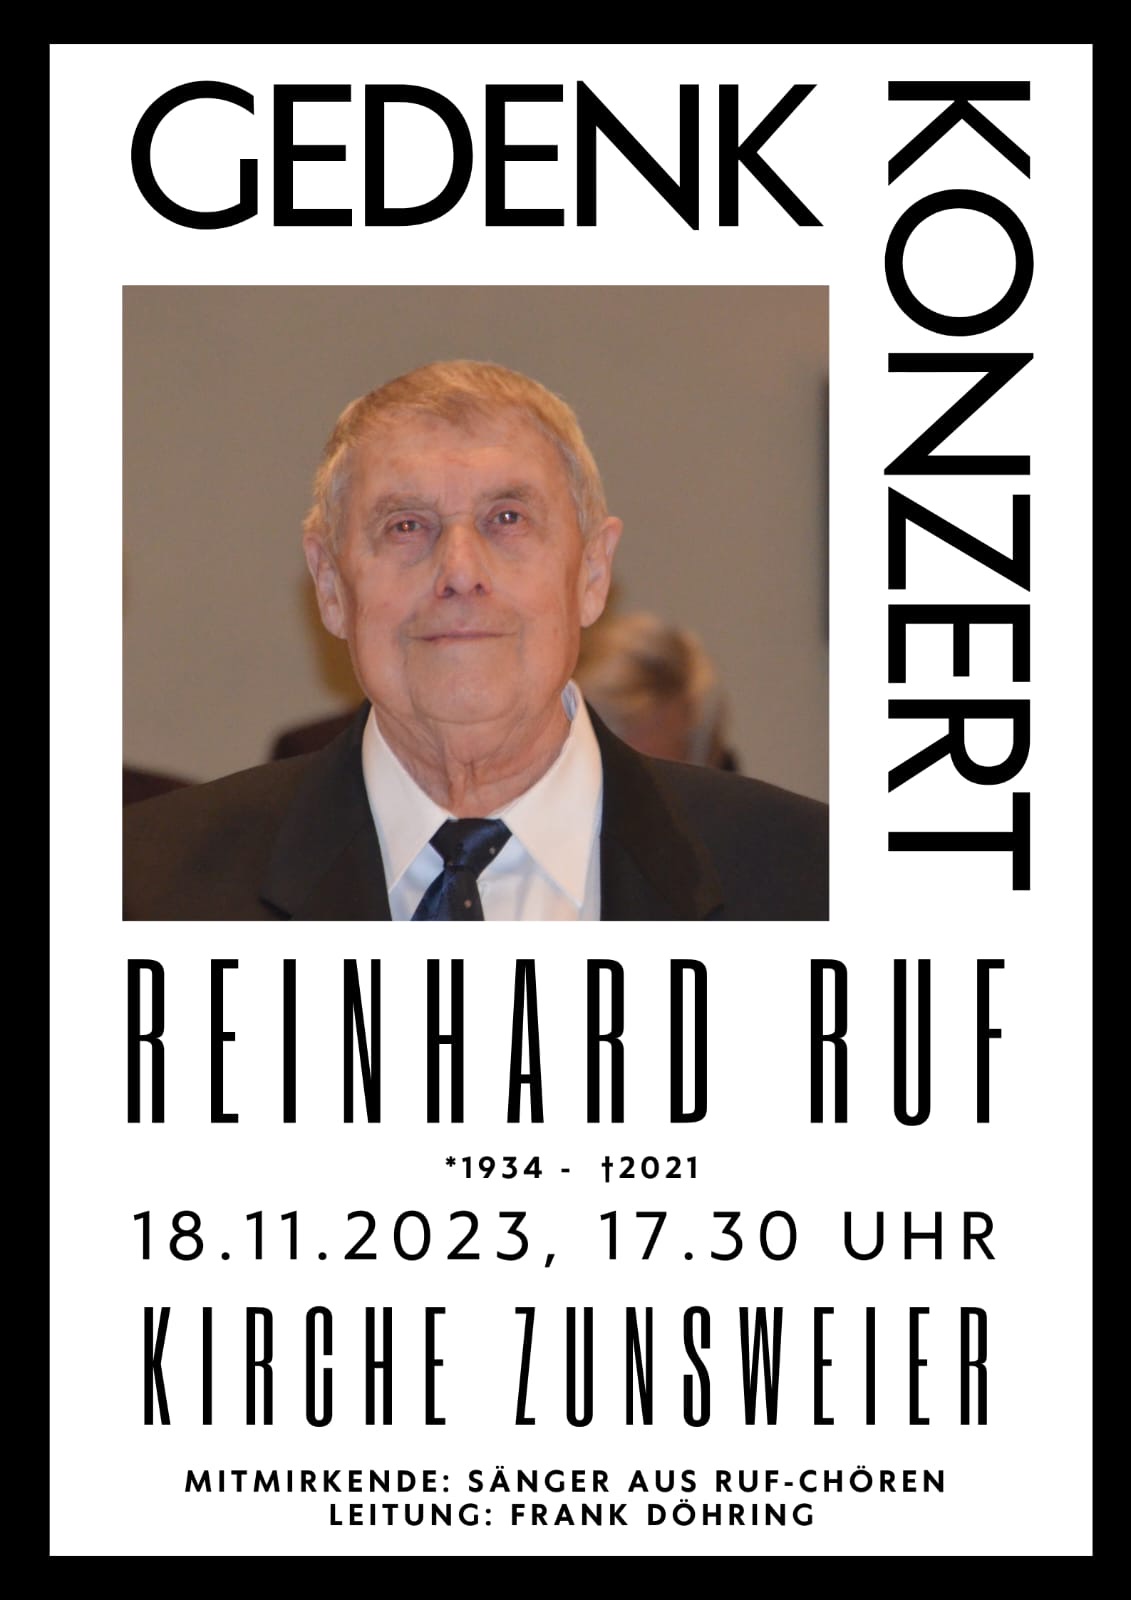 Gedenkkonzert Reinhard Ruf